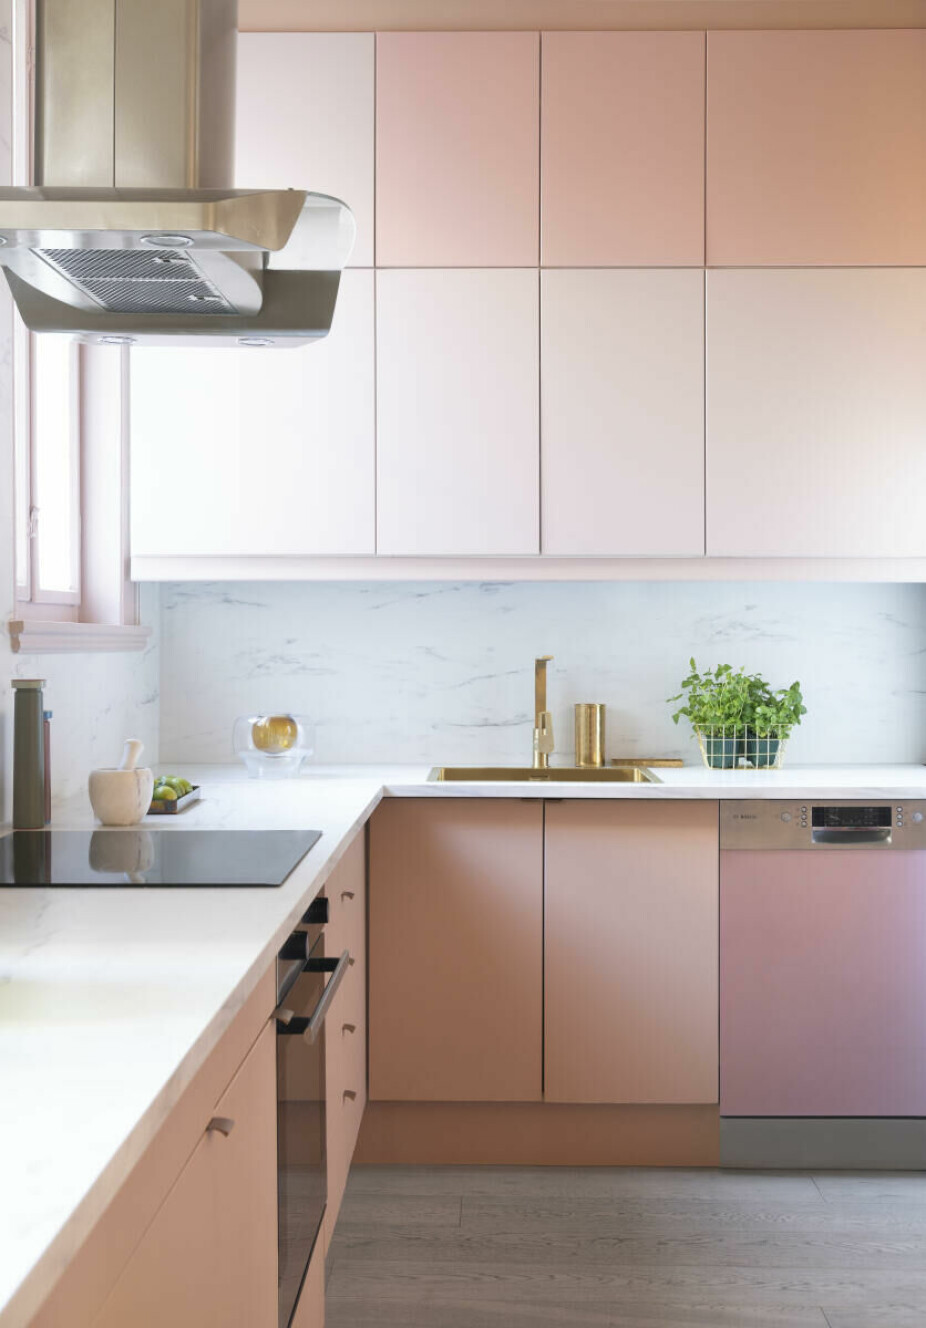 En vanlig, hvitt Ikea-kjøkken er fullstendig forandret med farger. Stian har valgt å kombinere fargene Støvrosa og Blushing Peach fra Jotun på skapfrontene, mens oppvaskmaskinen har fått en lys lilla dekorfolie.